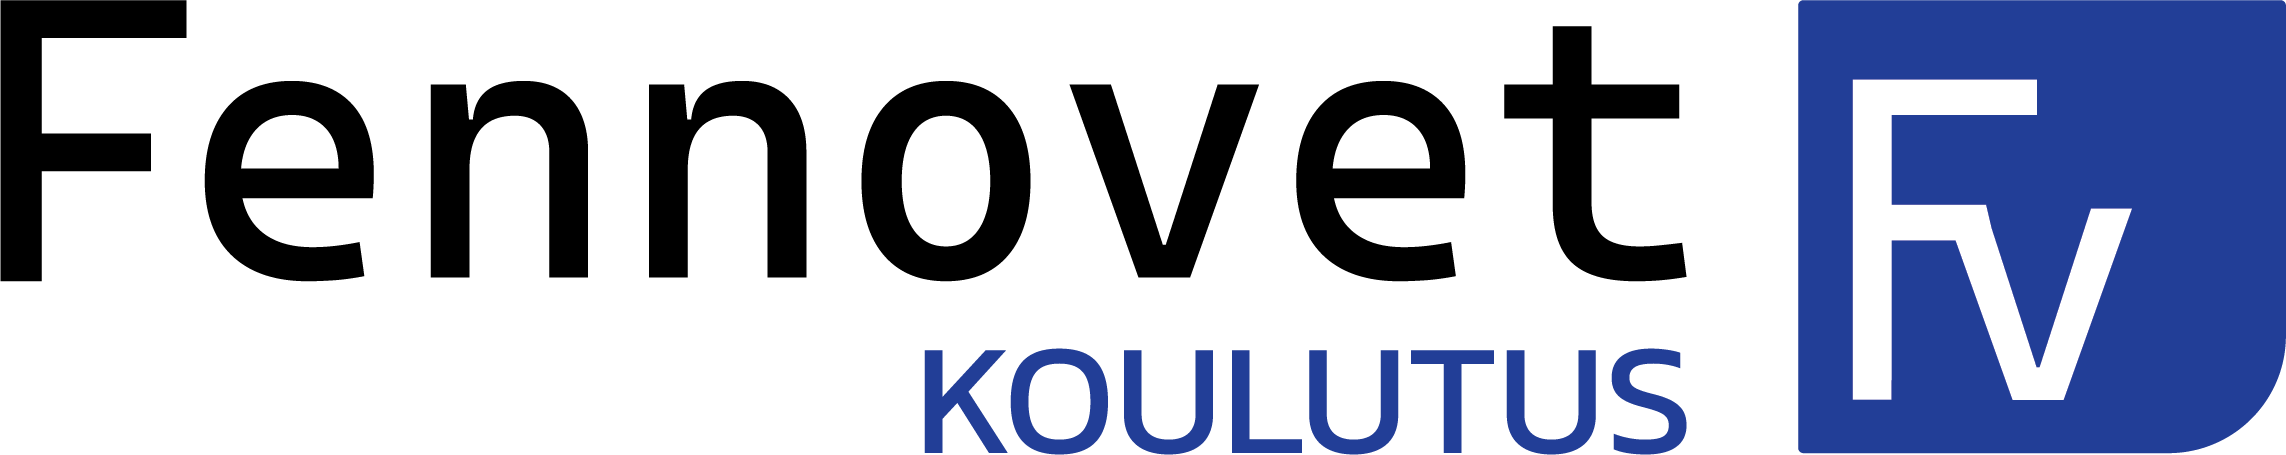 fennovet logo